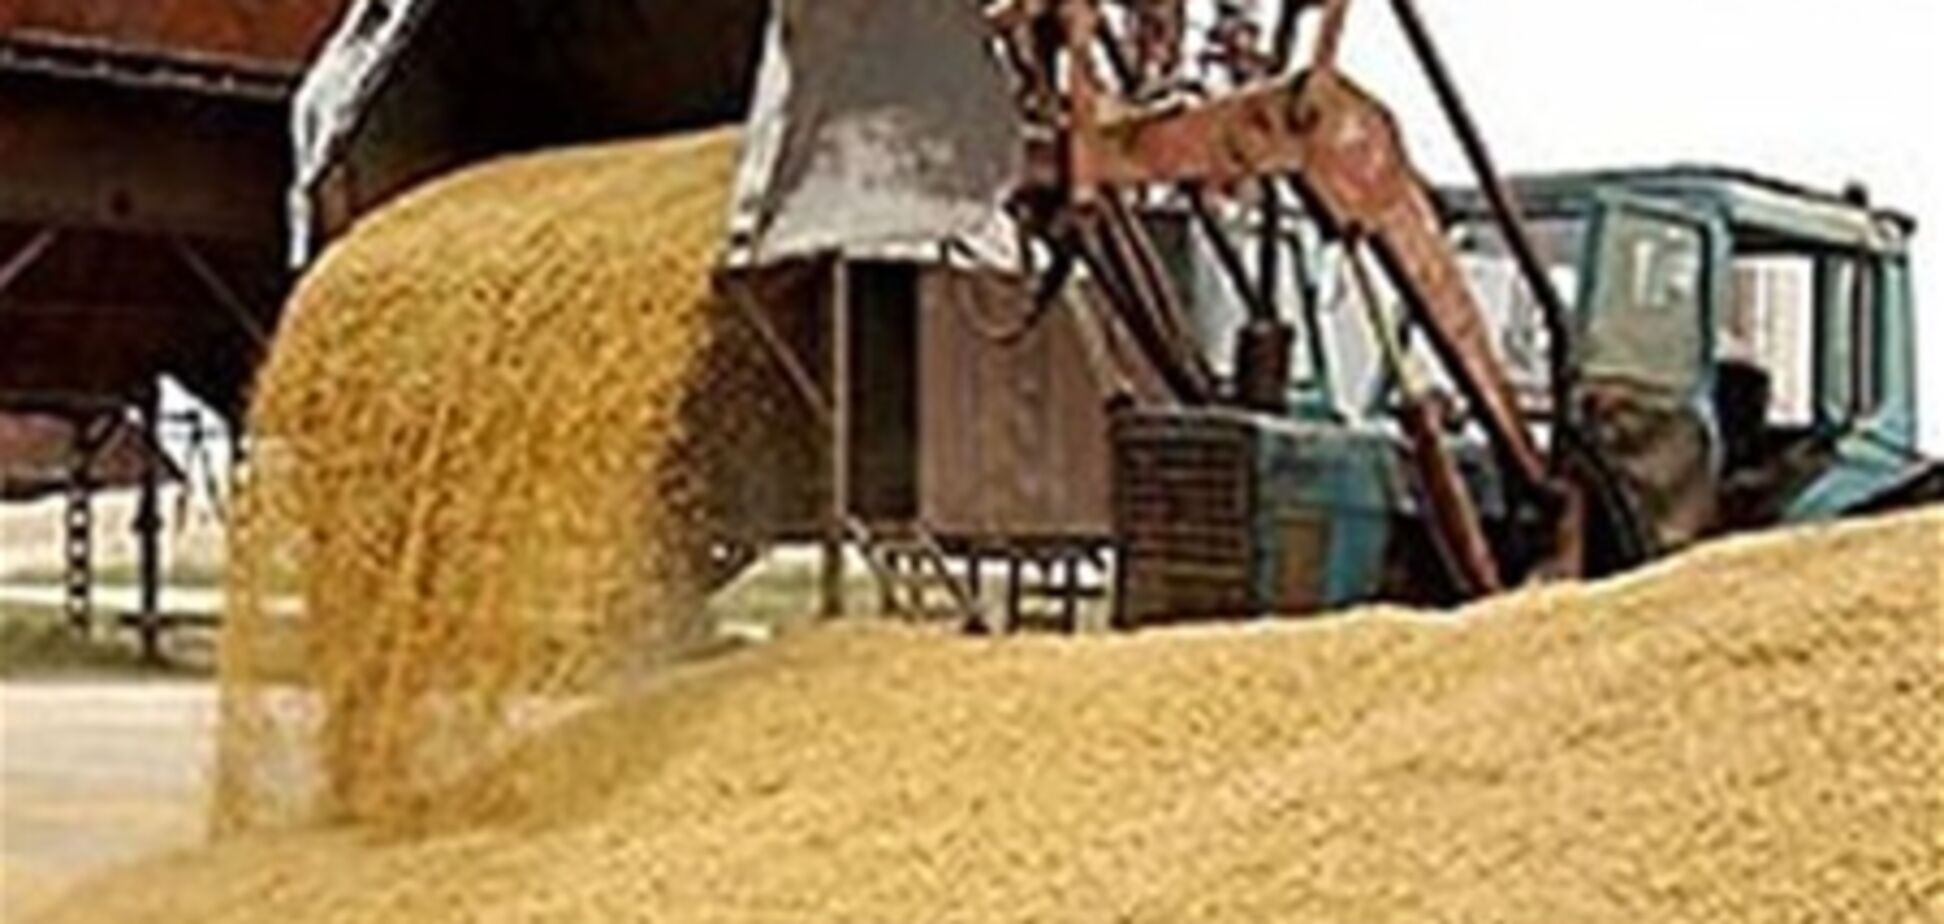 КРУ: В Госрезерве зерно только на бумаге